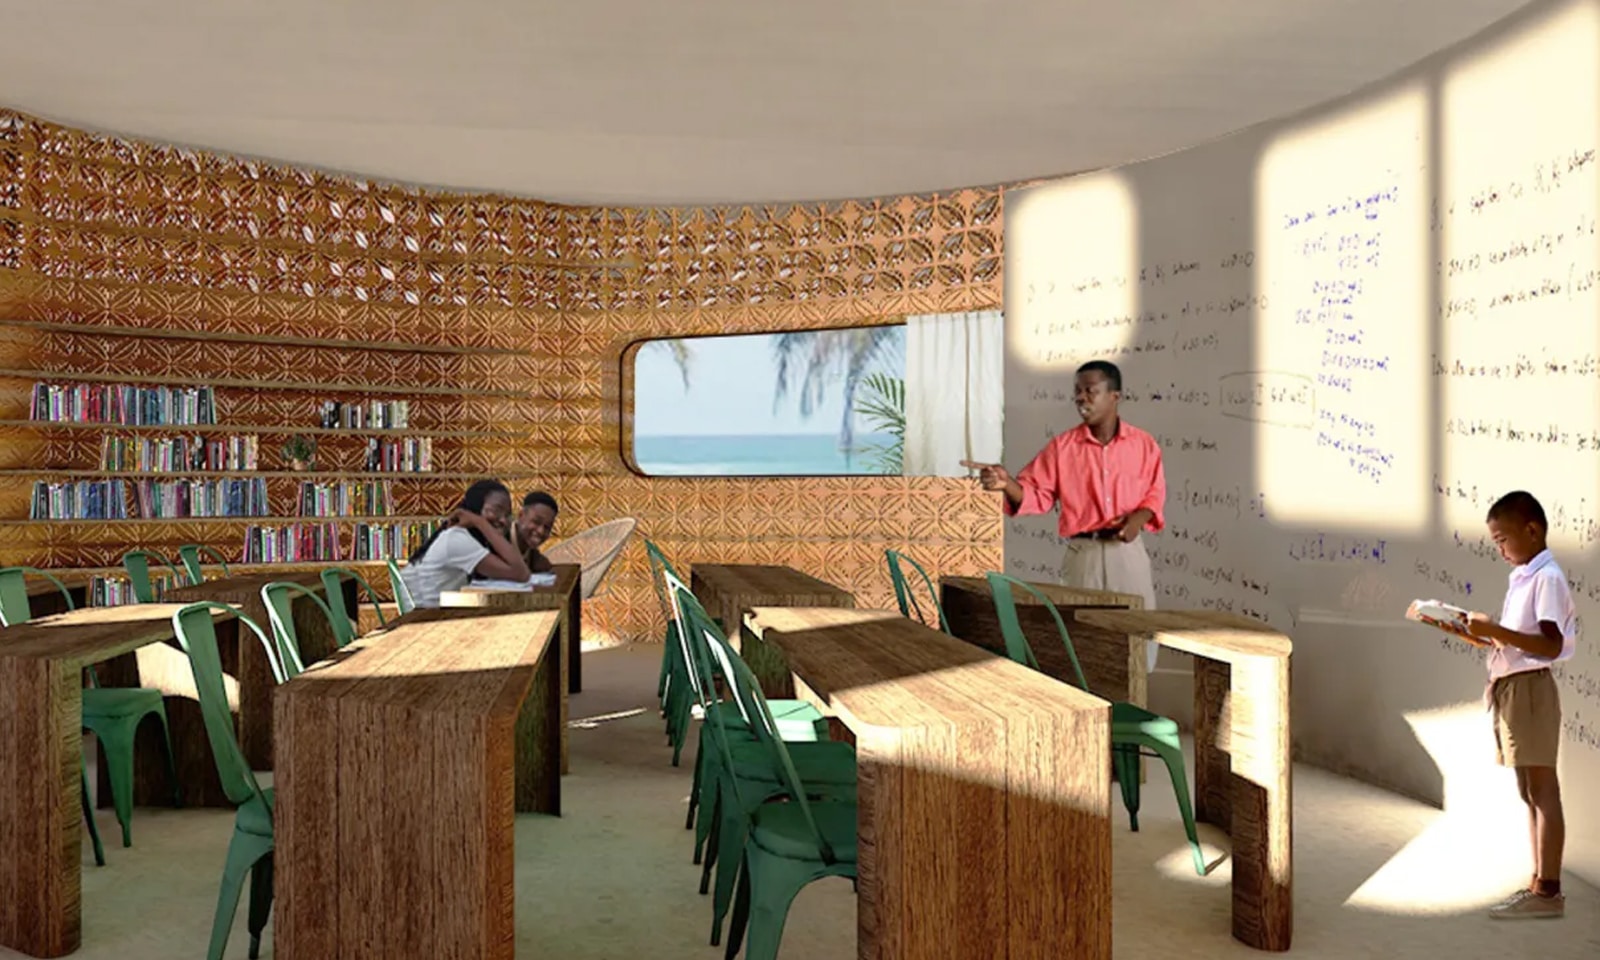 La toute première école imprimée en 3D, dont le design comporte des panneaux solaires et une configuration de Ruche qui permet la fixation de plusieurs écoles, verra le jour à Madagascar.